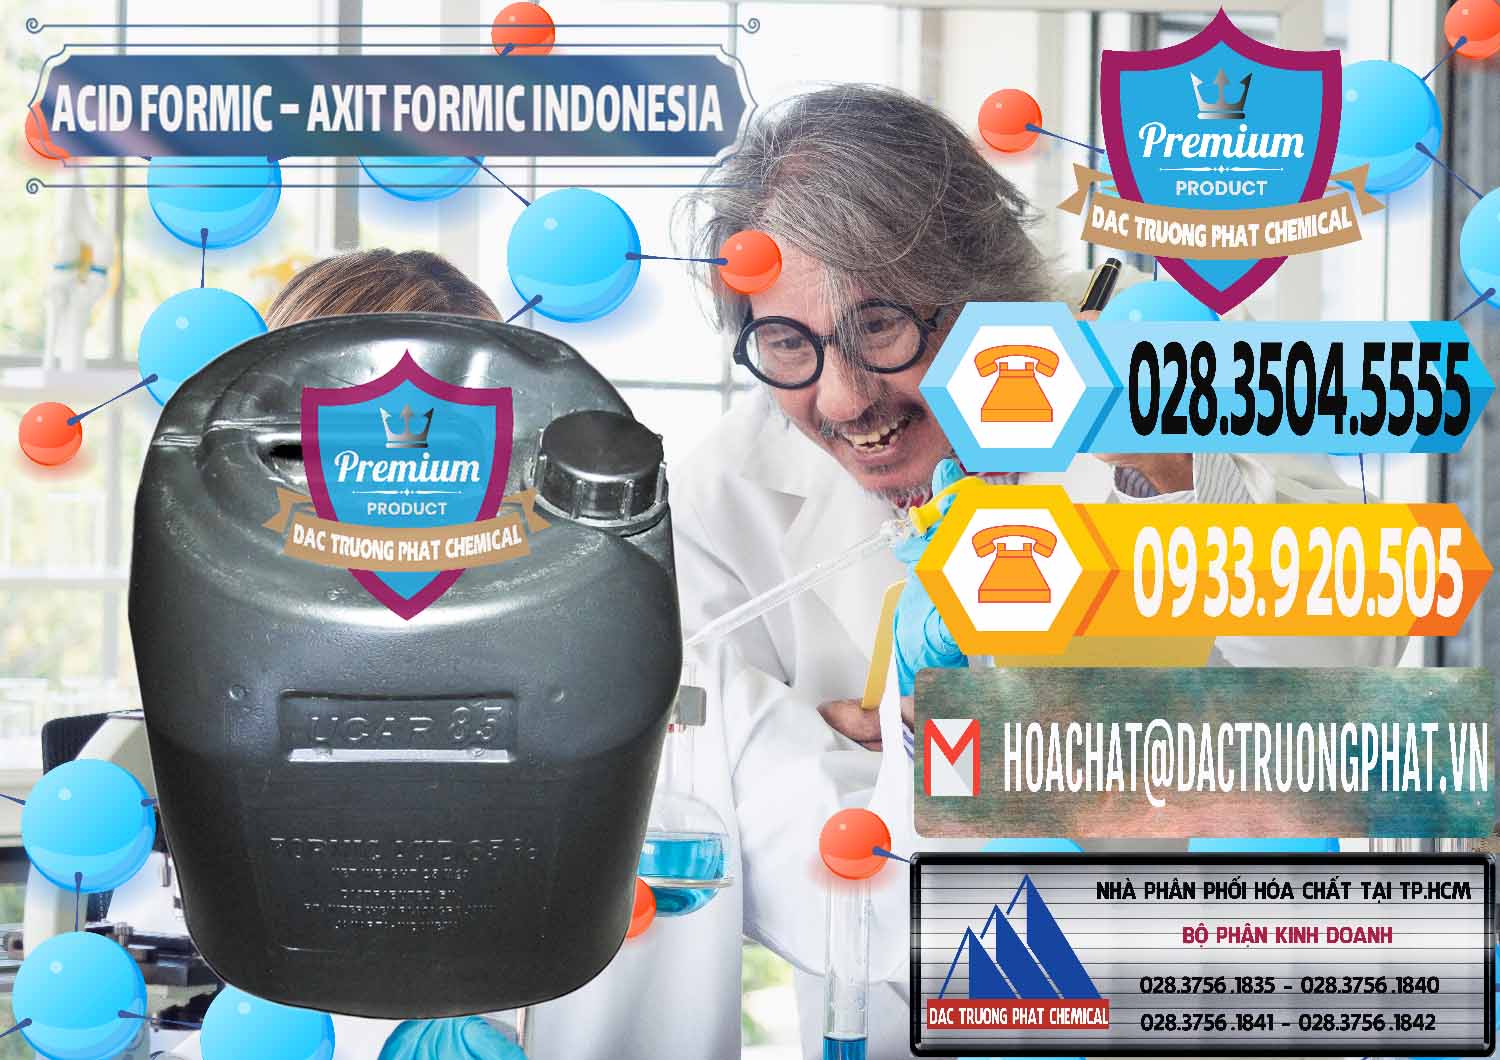 Đơn vị chuyên cung ứng & bán Acid Formic - Axit Formic Indonesia - 0026 - Nơi chuyên bán - phân phối hóa chất tại TP.HCM - hoachattayrua.net